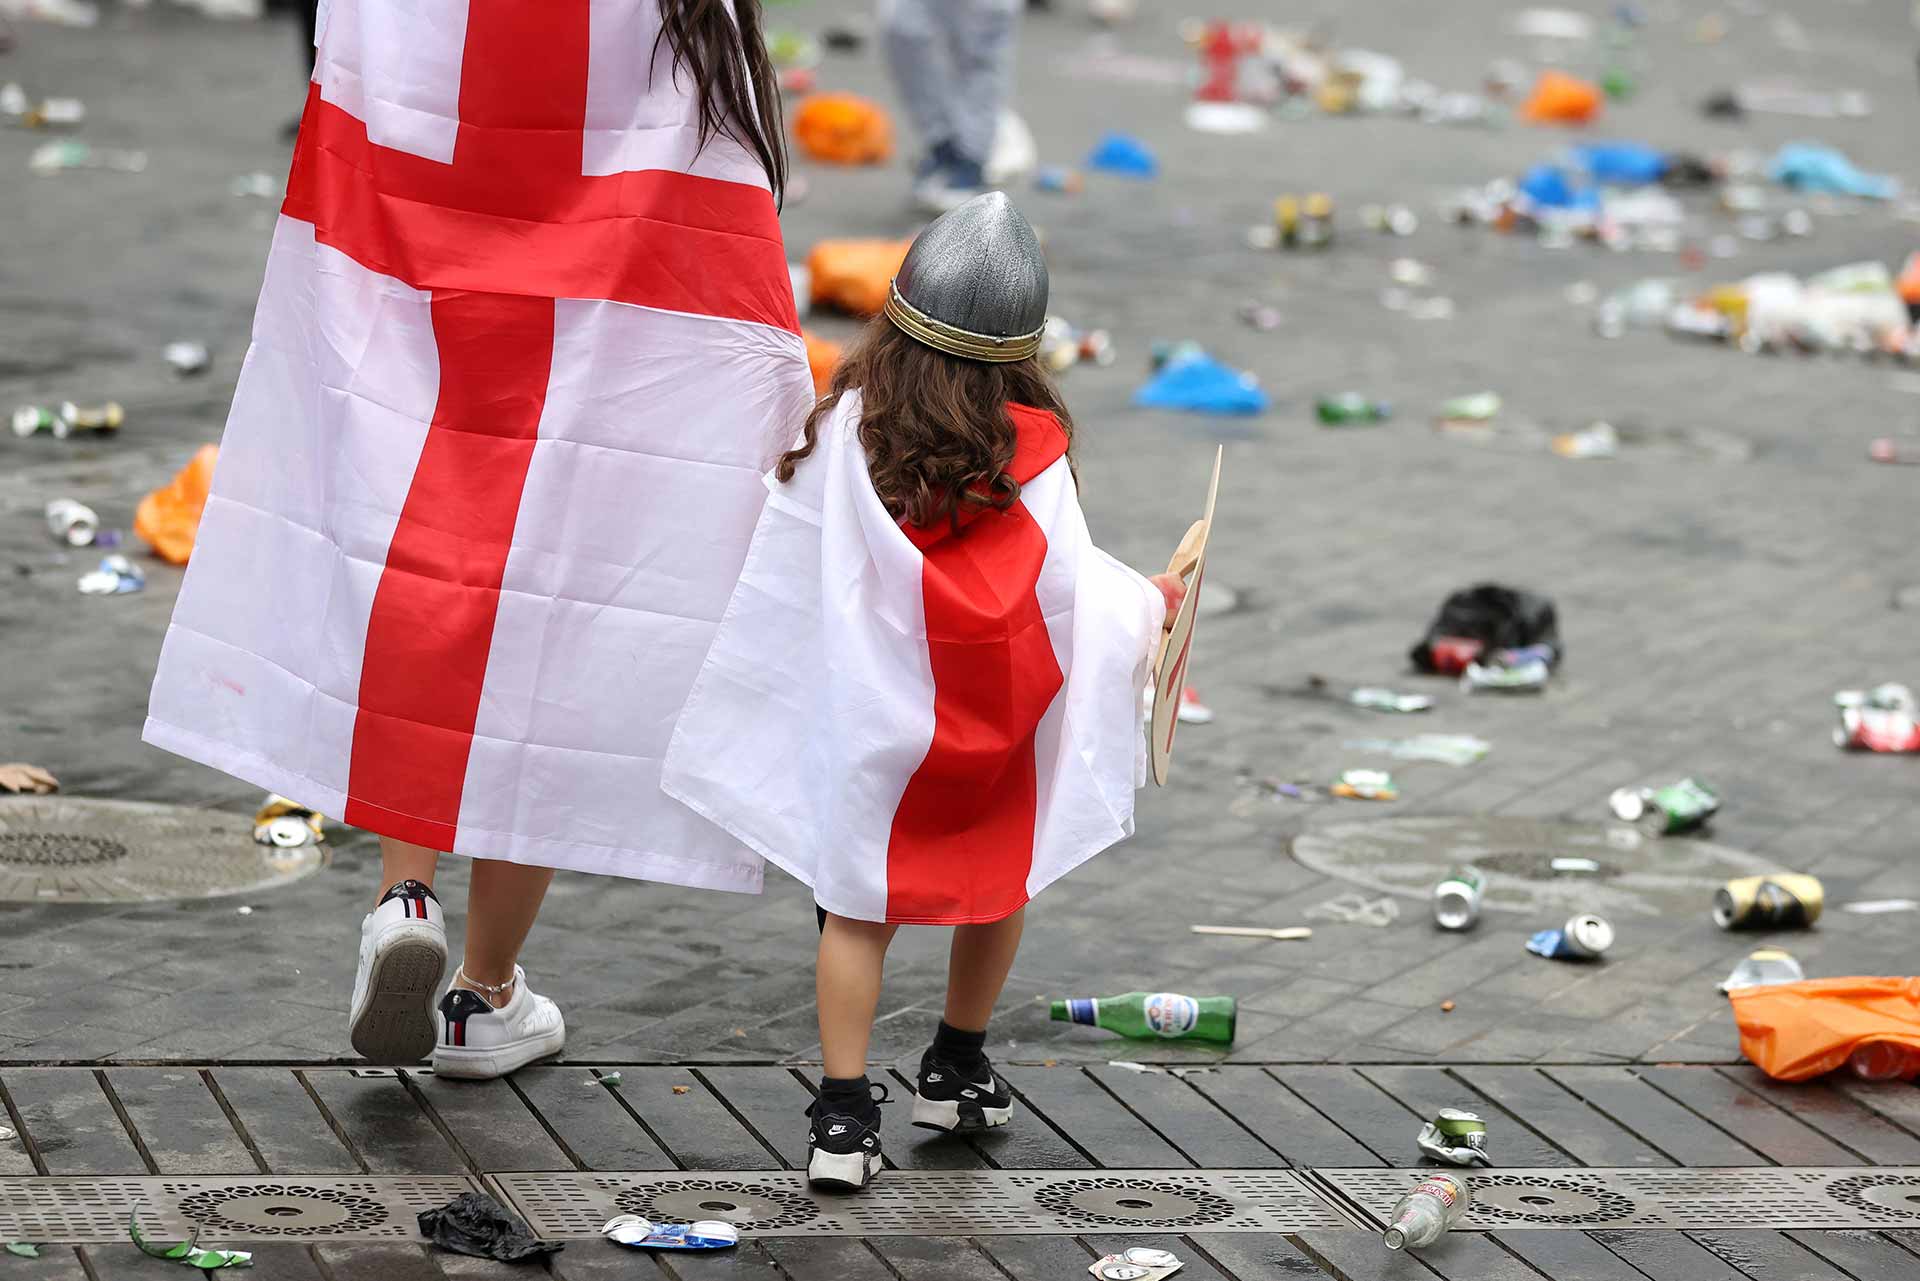 Otra tragedia inglesa: cuatro dimensiones geopolíticas de la industria del fútbol después de la Eurocopa 2020